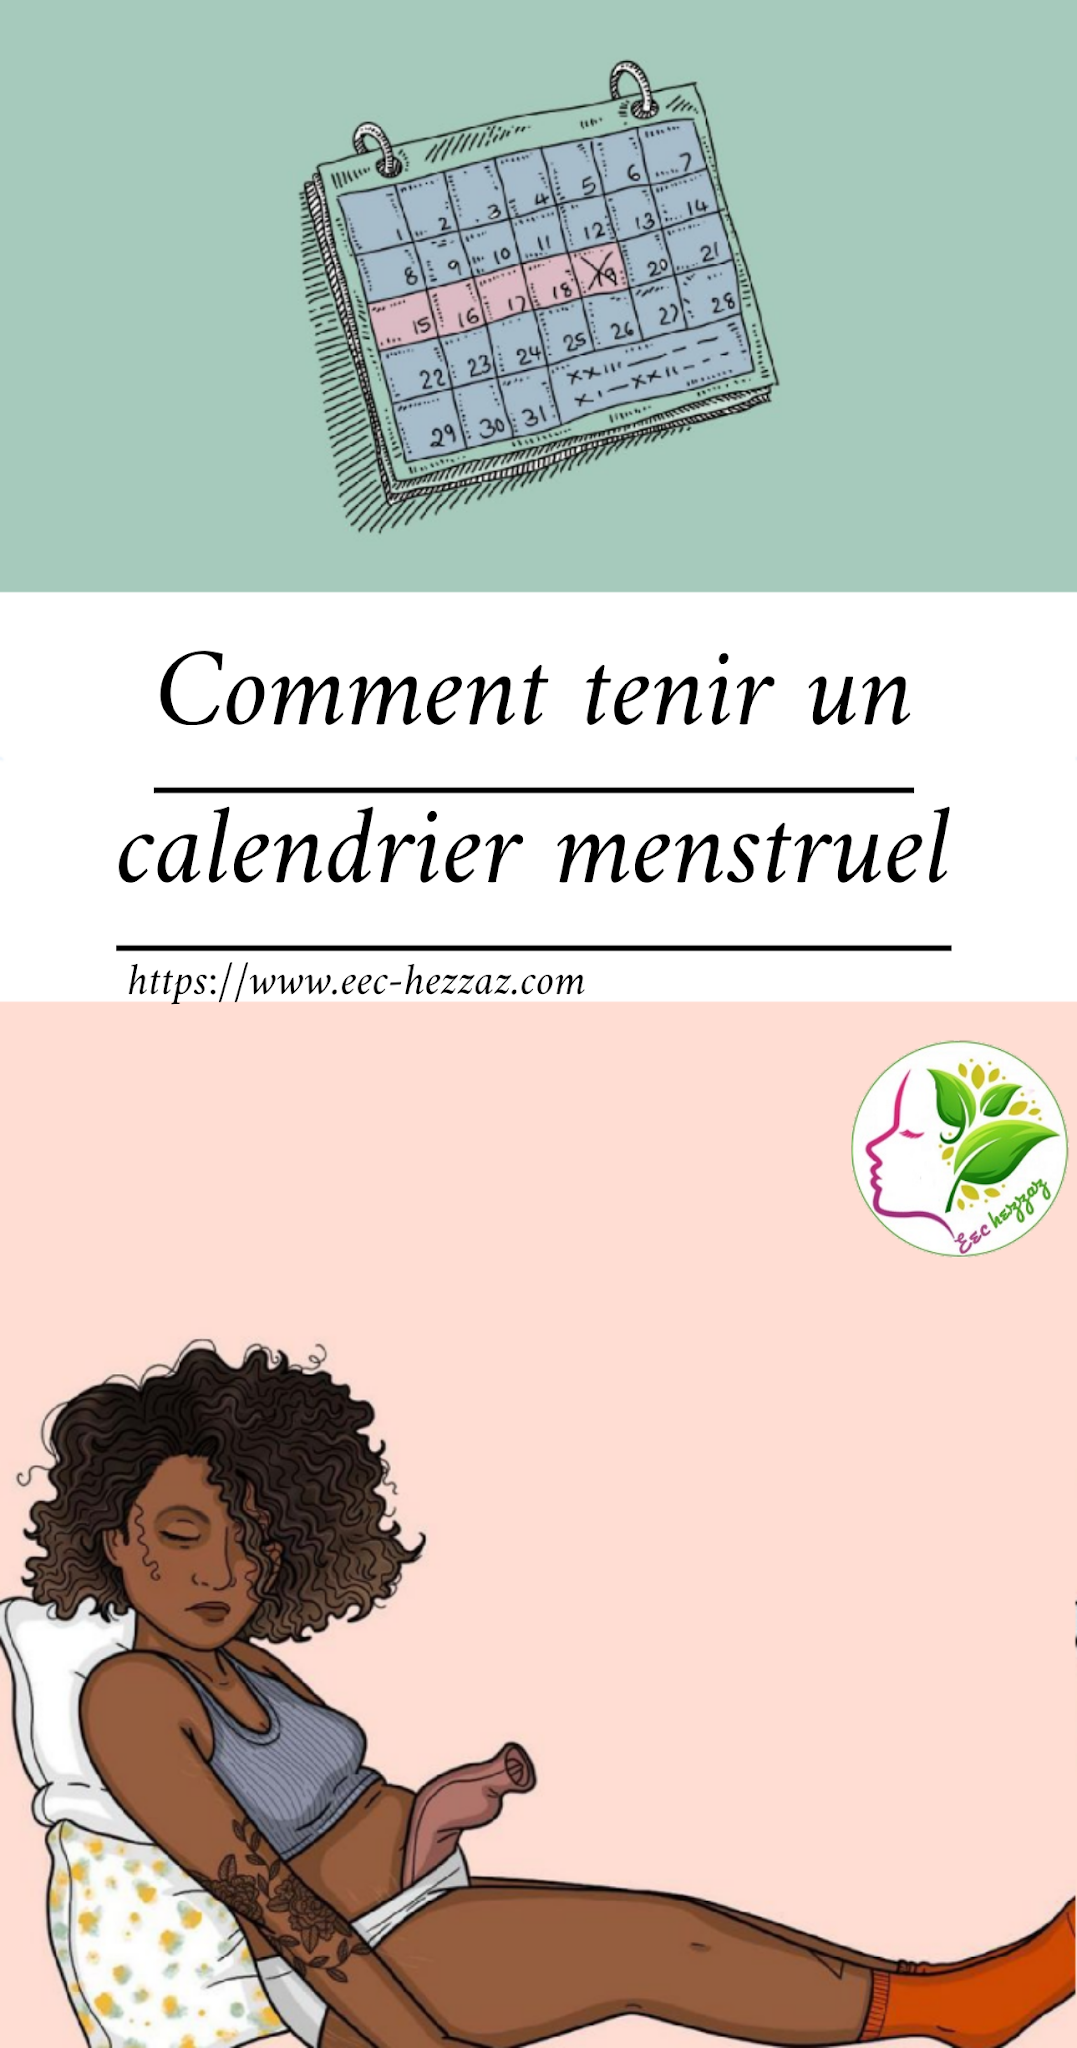 Comment tenir un calendrier menstruel